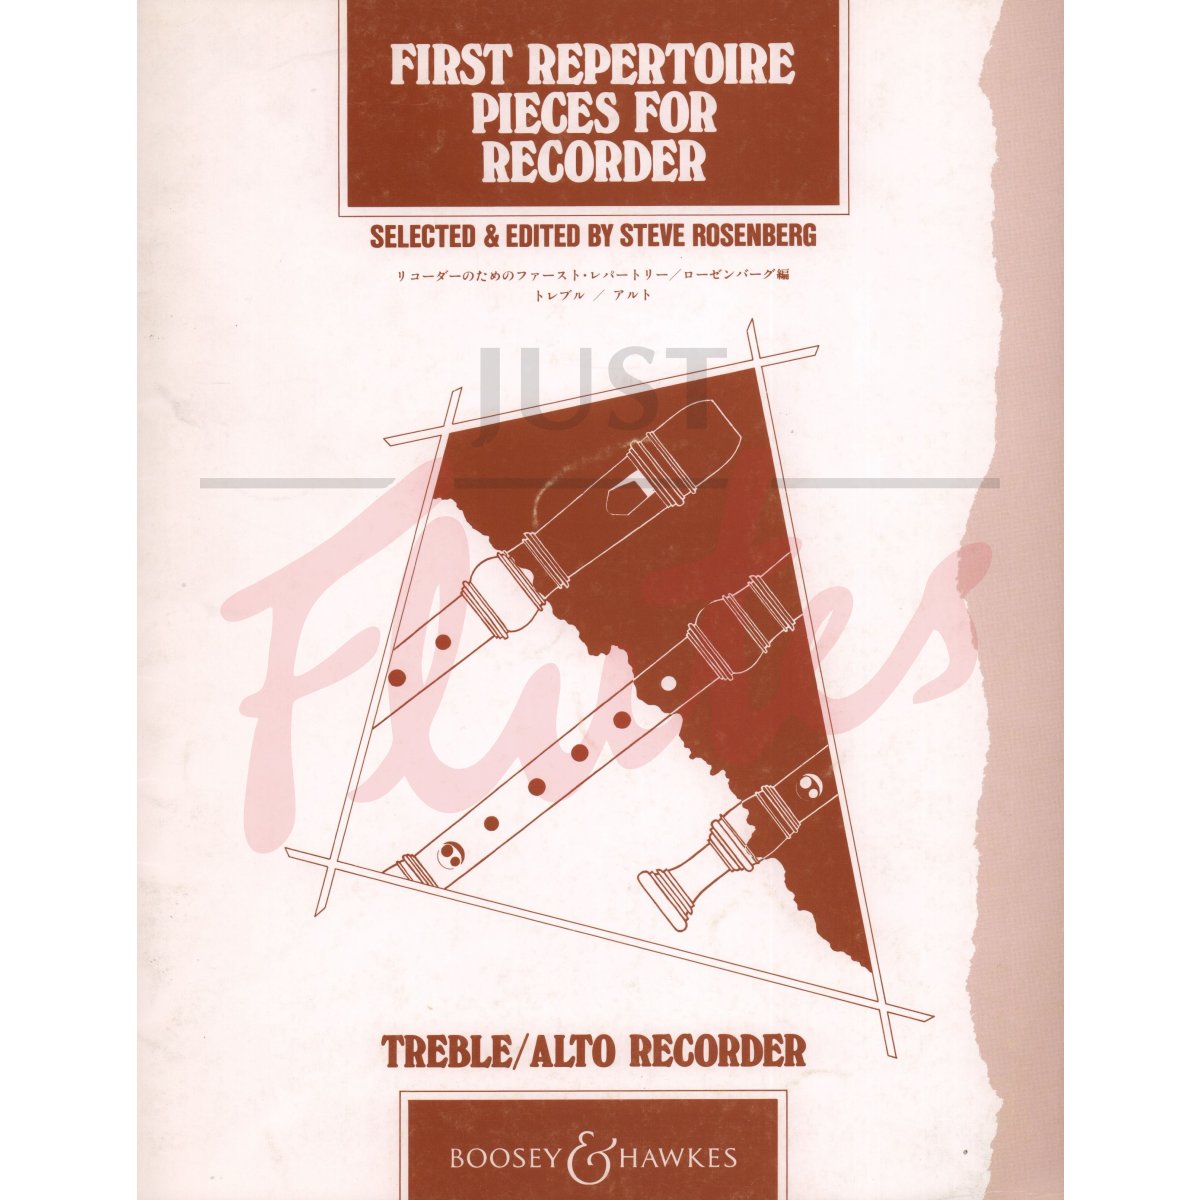 First Repertoire Pieces For Treble/Alto Recorder